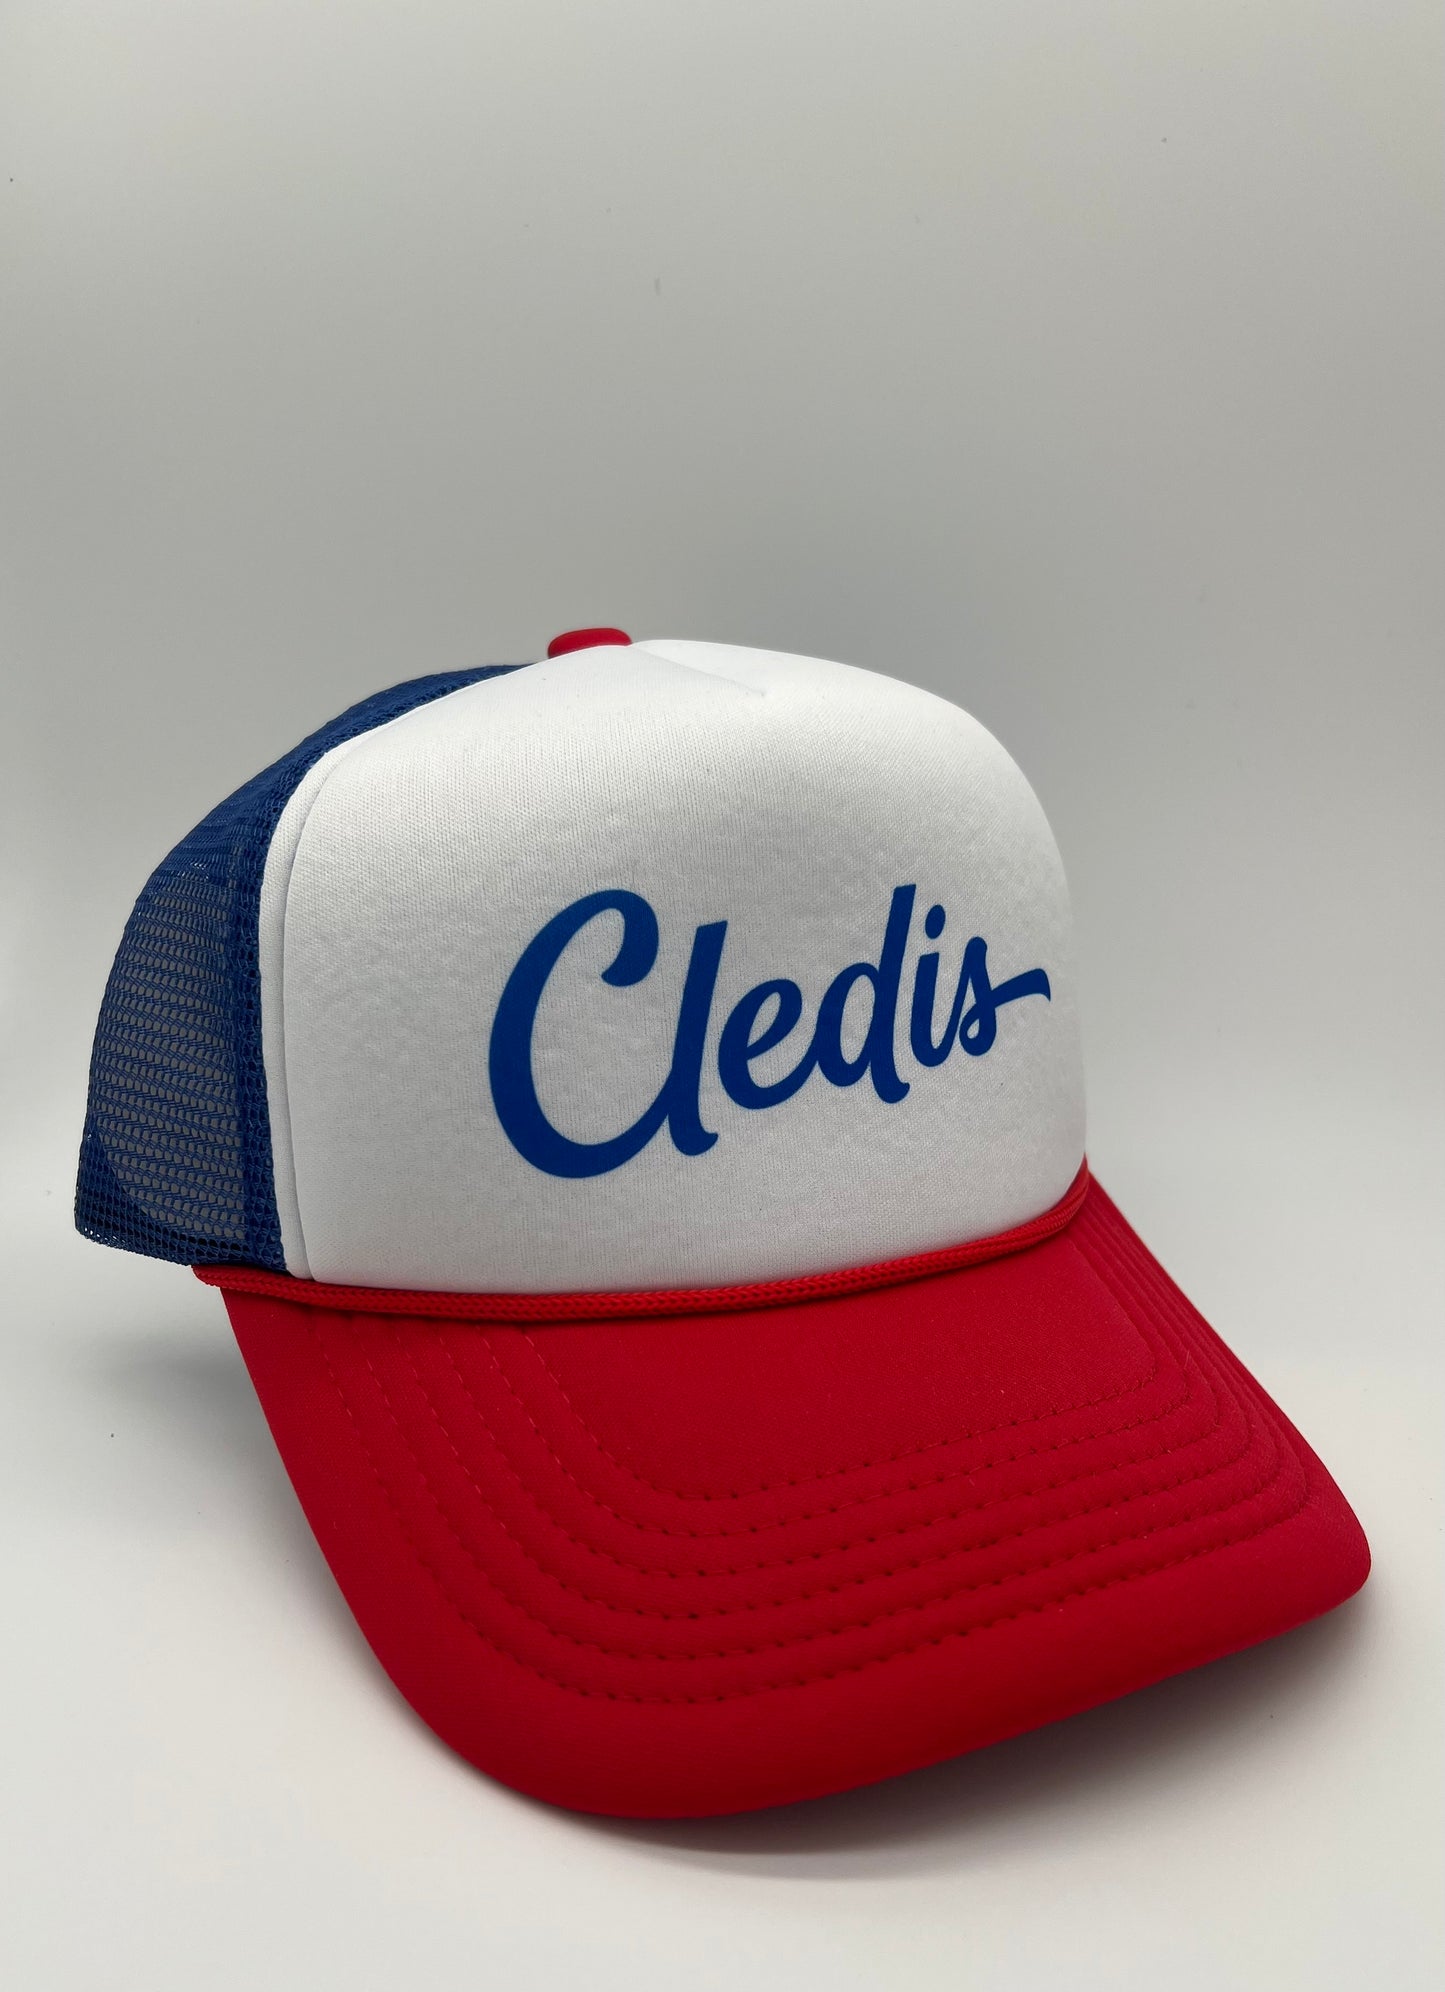 Red, White & Blue Cledis Trucker Hat